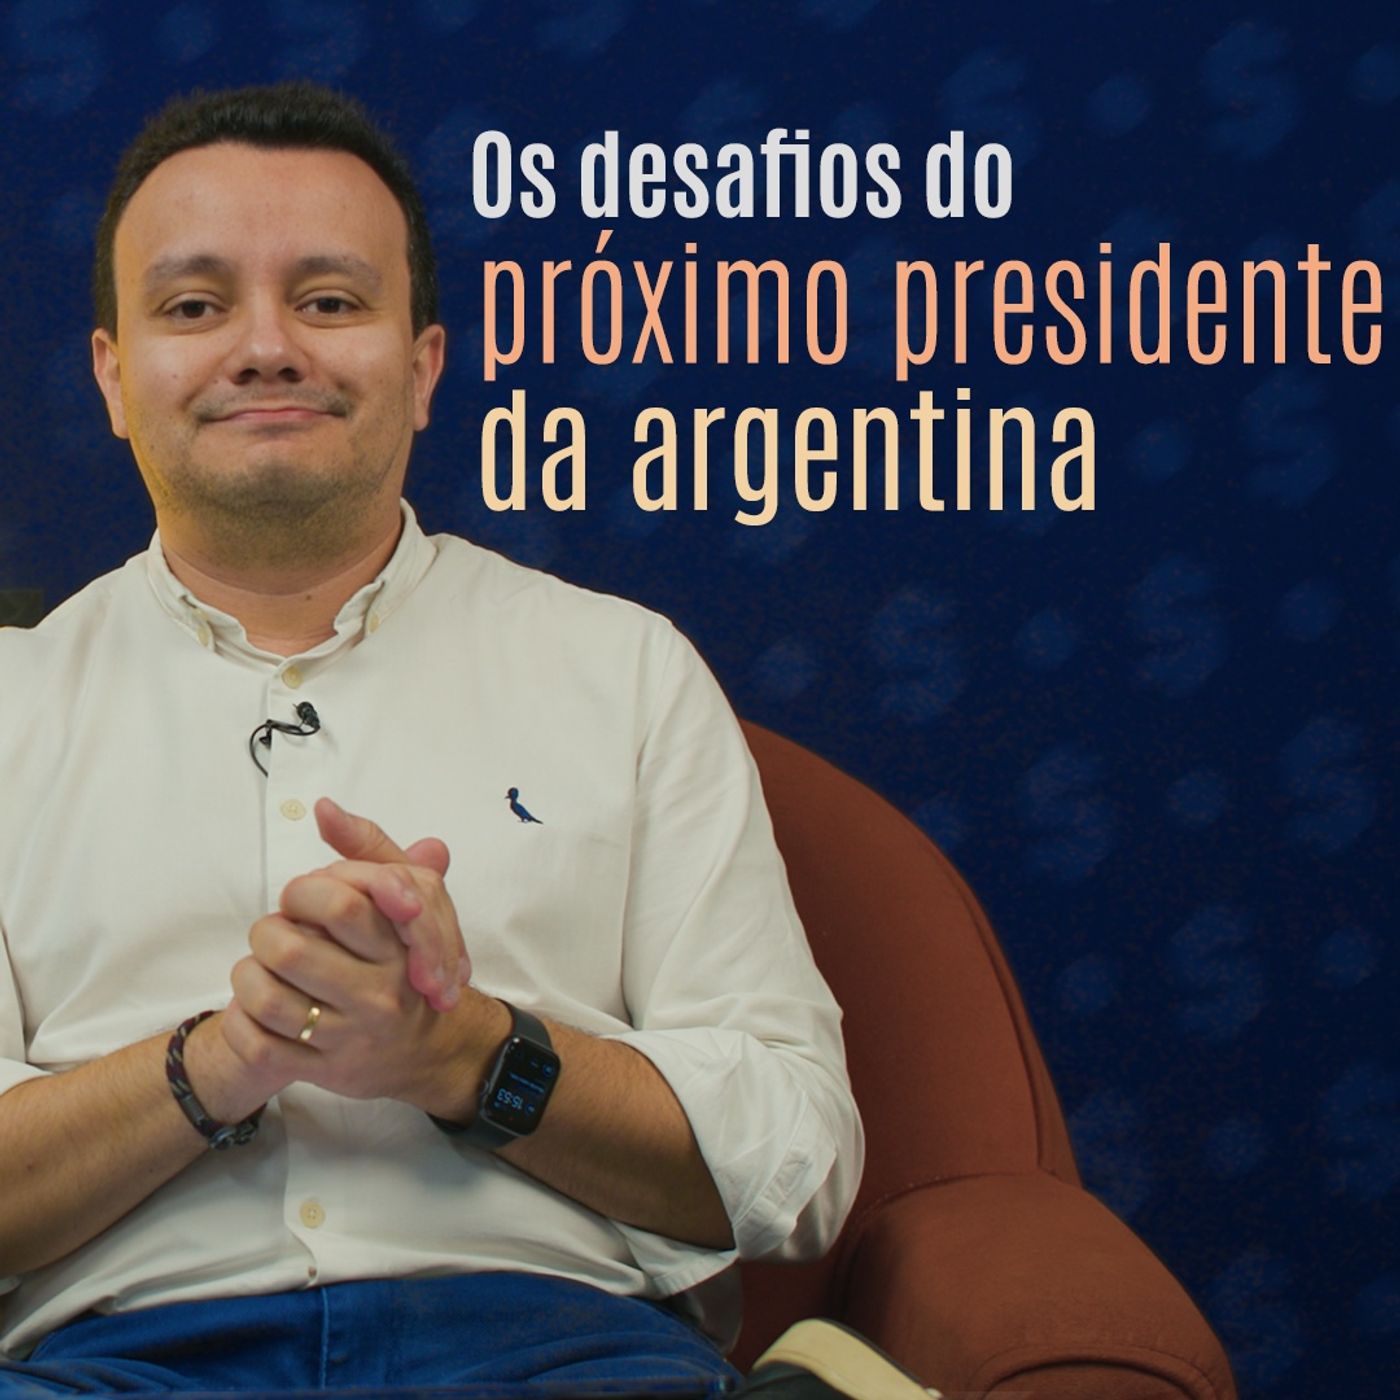 Os desafios econômicos do próximo presidente da Argentina.